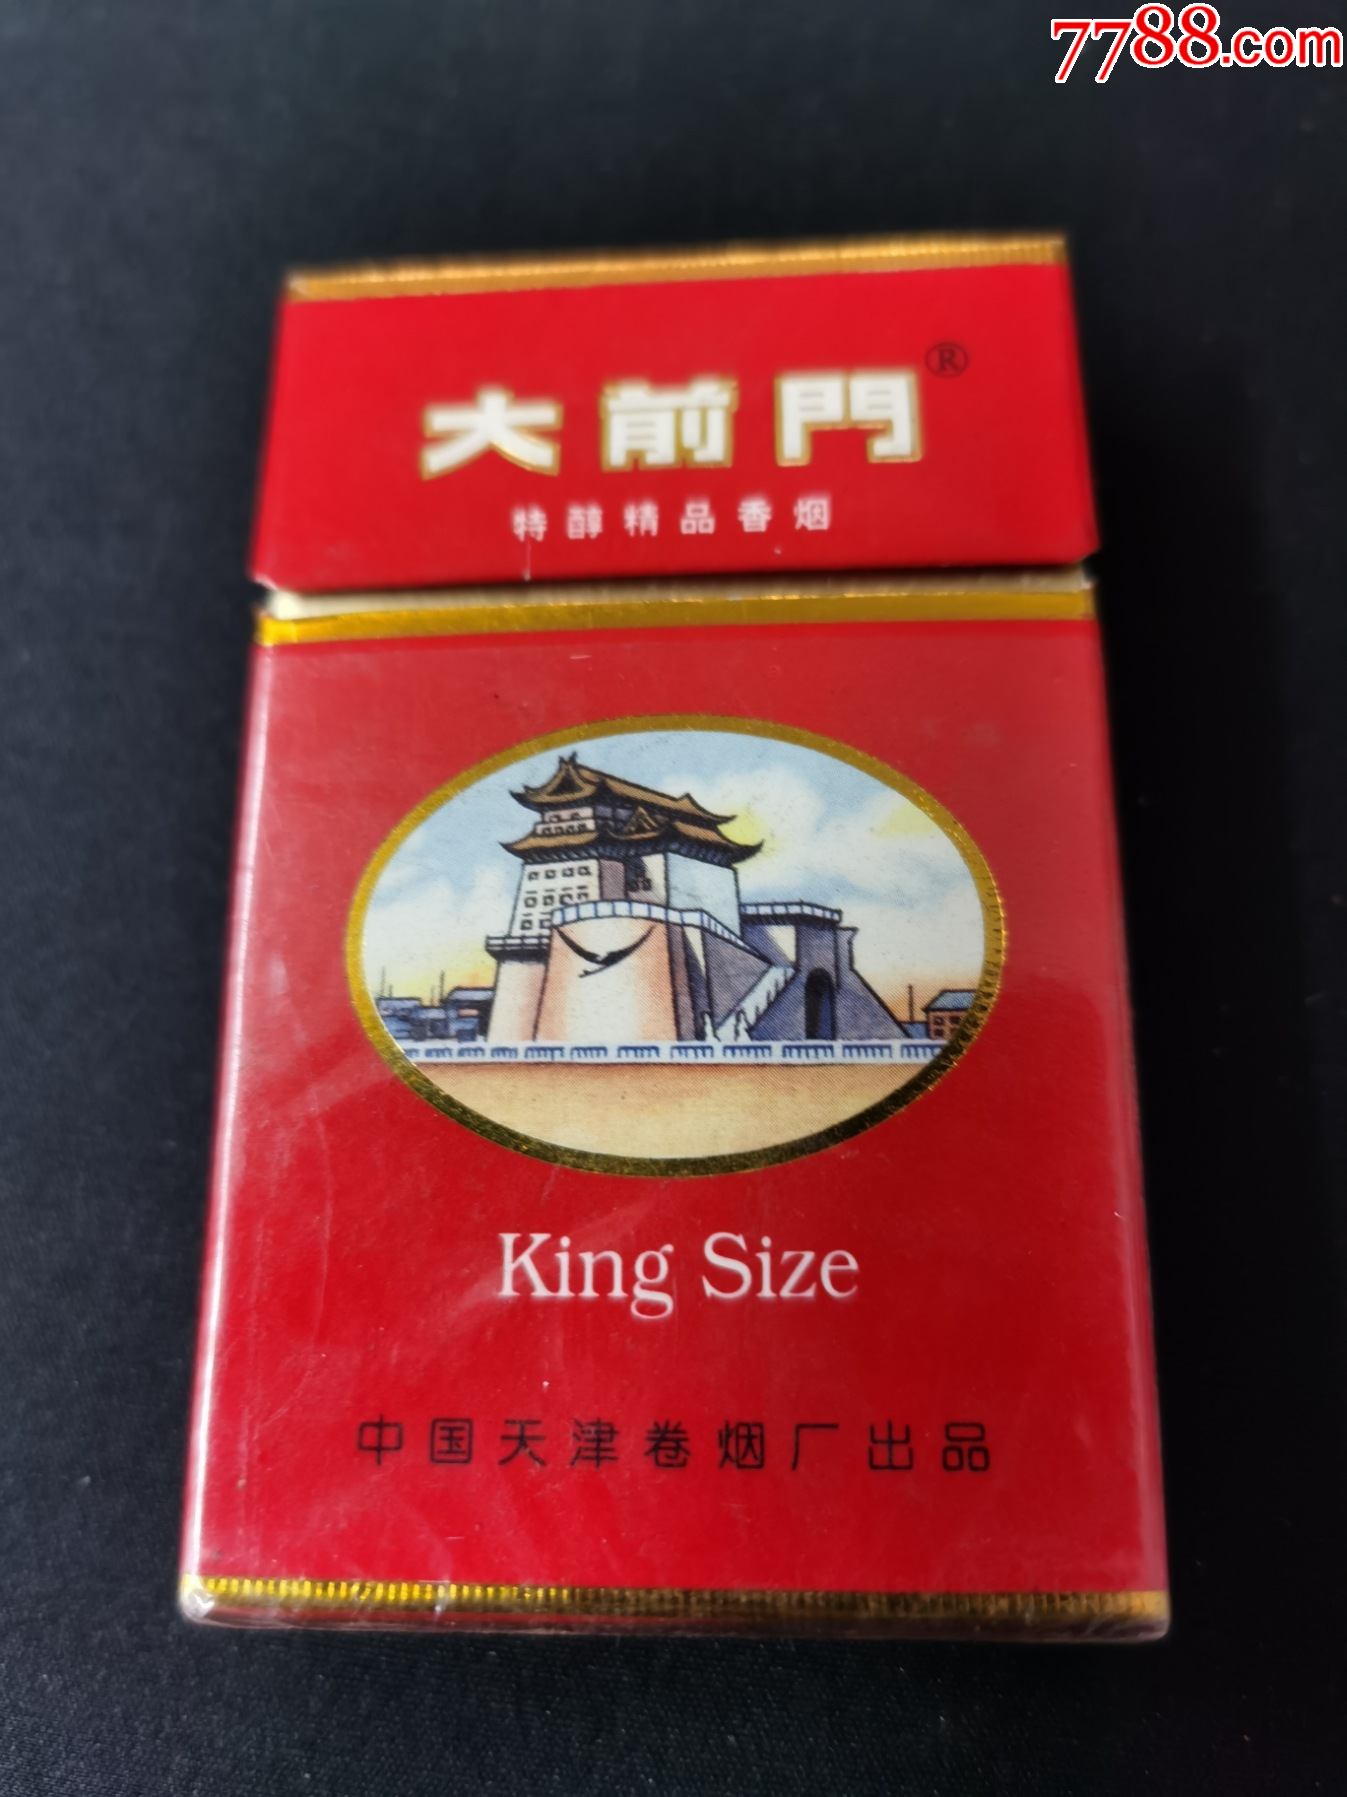 3d【大前门】多图;中国天津卷烟厂